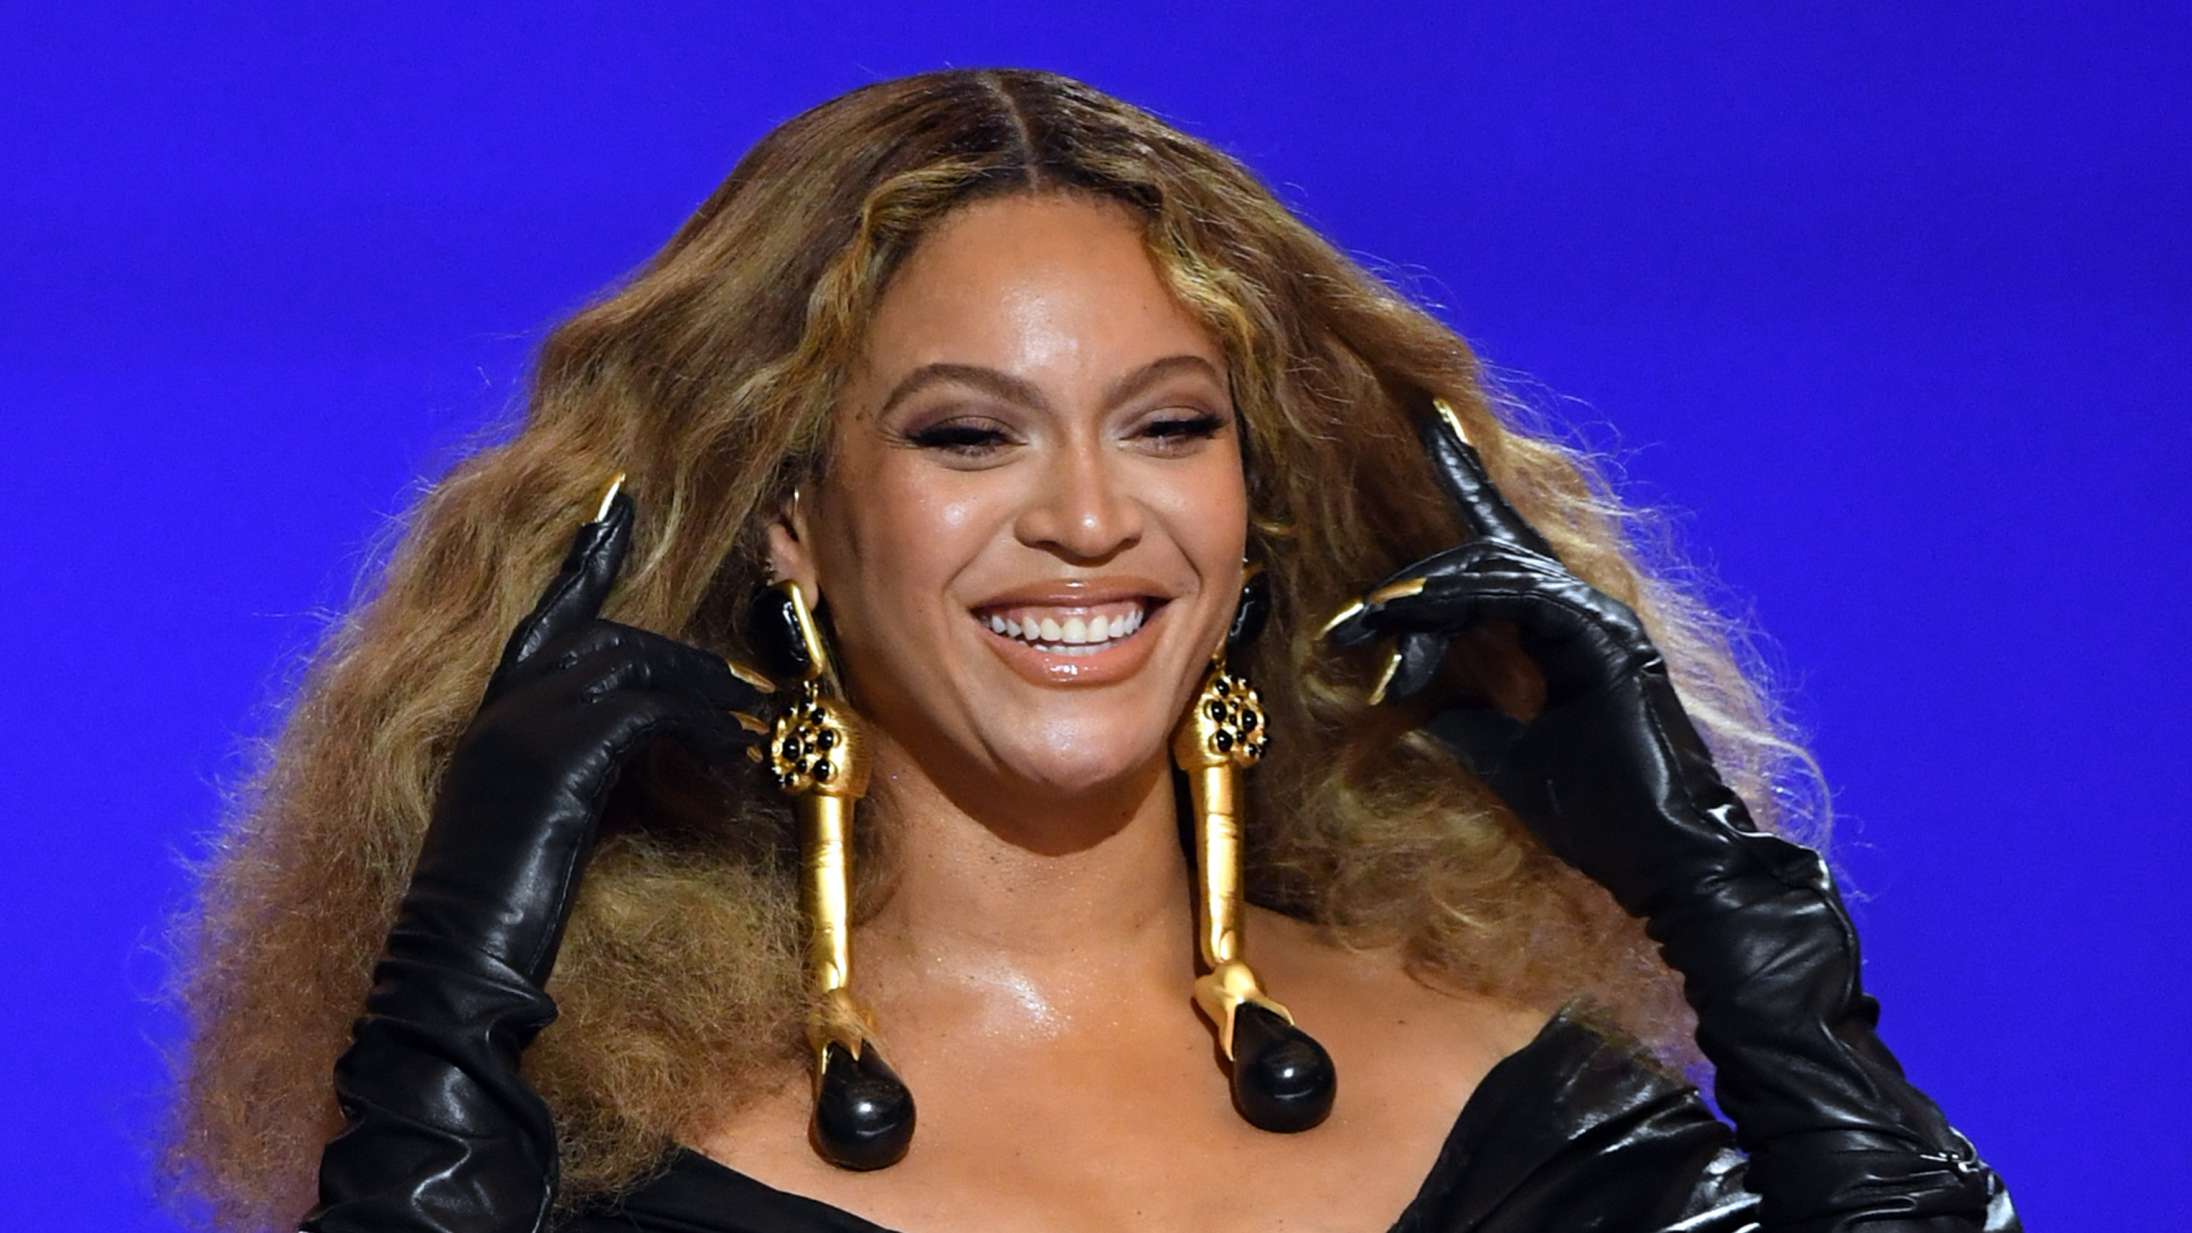 Fans reagerer på Beyoncés ‘Break My Soul’ – her er nogle af de bedste memes